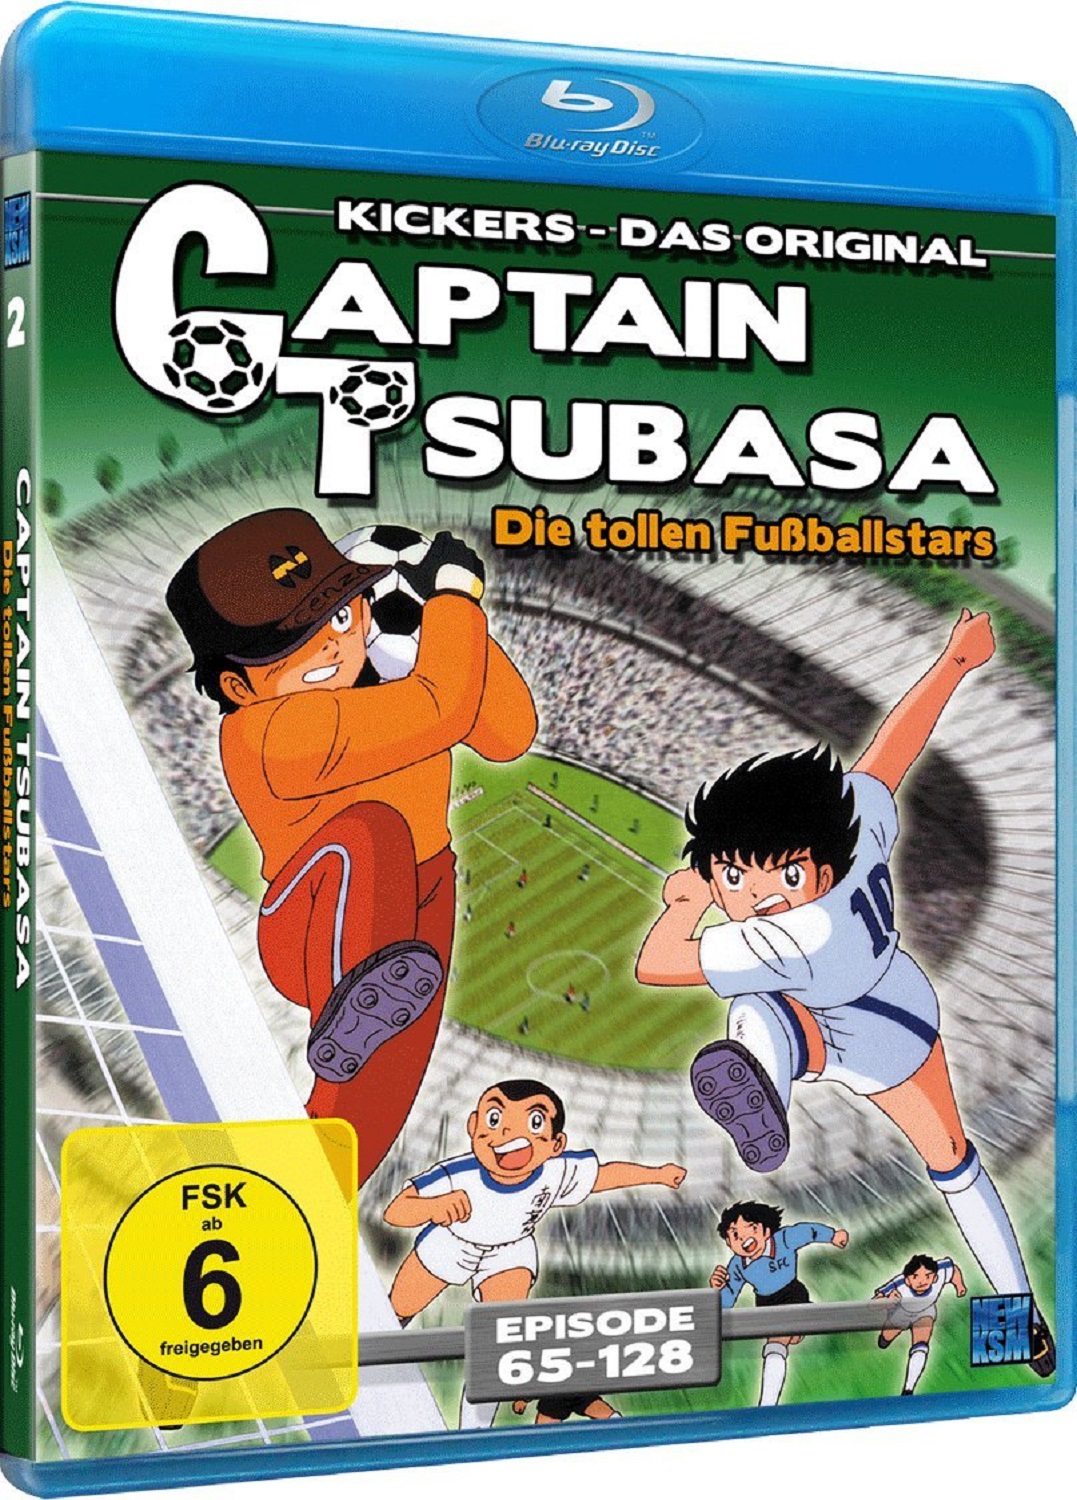 Captain Tsubasa: Die tollen Fußballstars - Episoden 65-128 Blu-ray Image 6